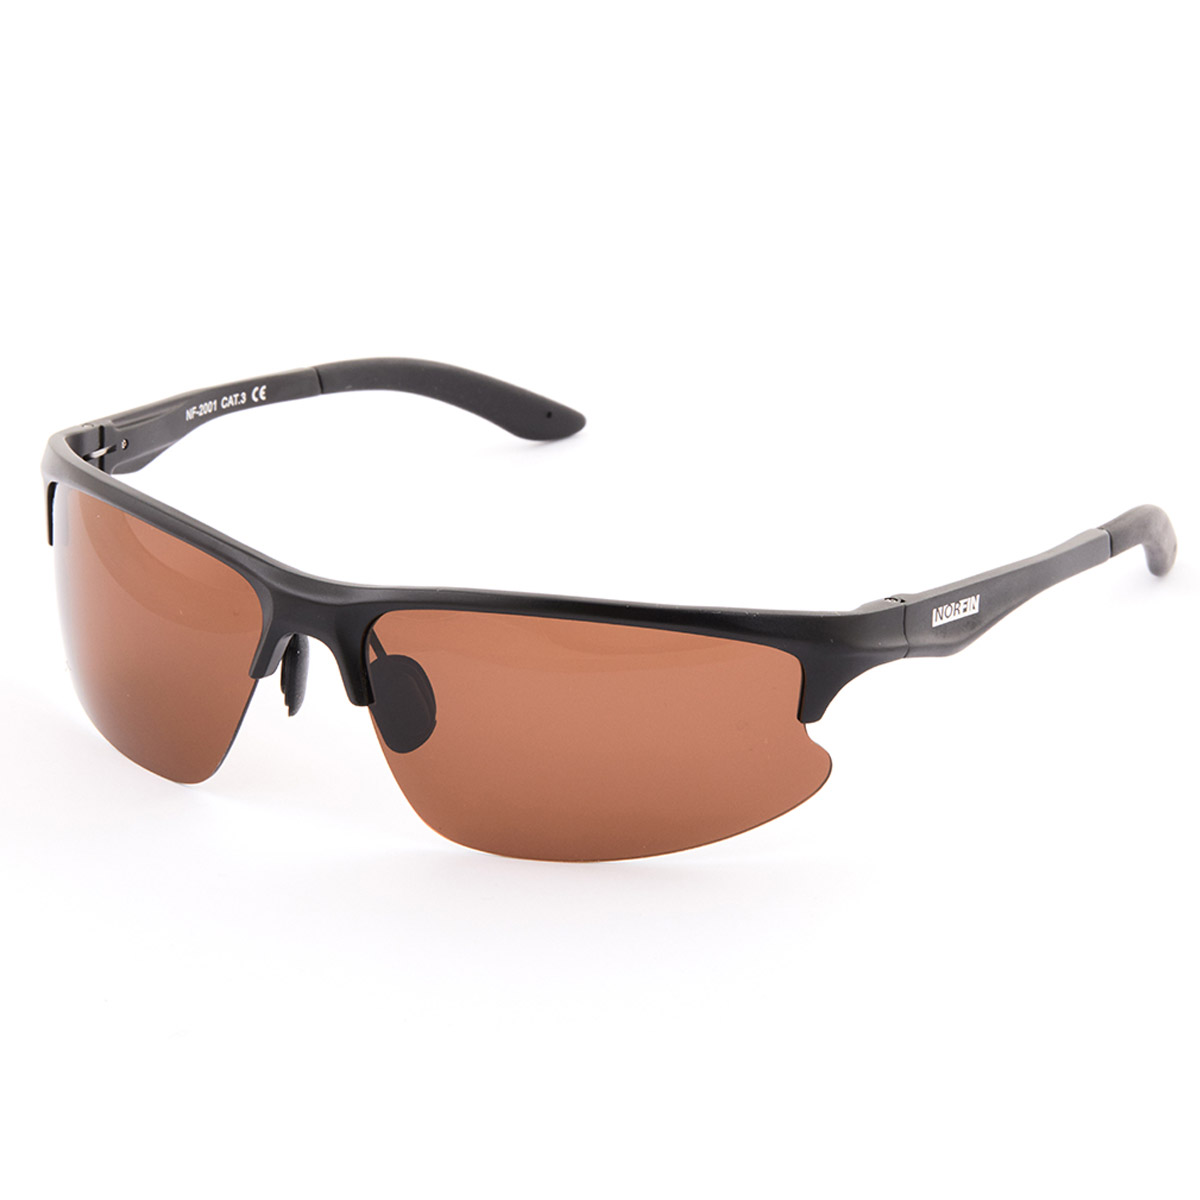 Norfin Polarized Sunglasses Brown